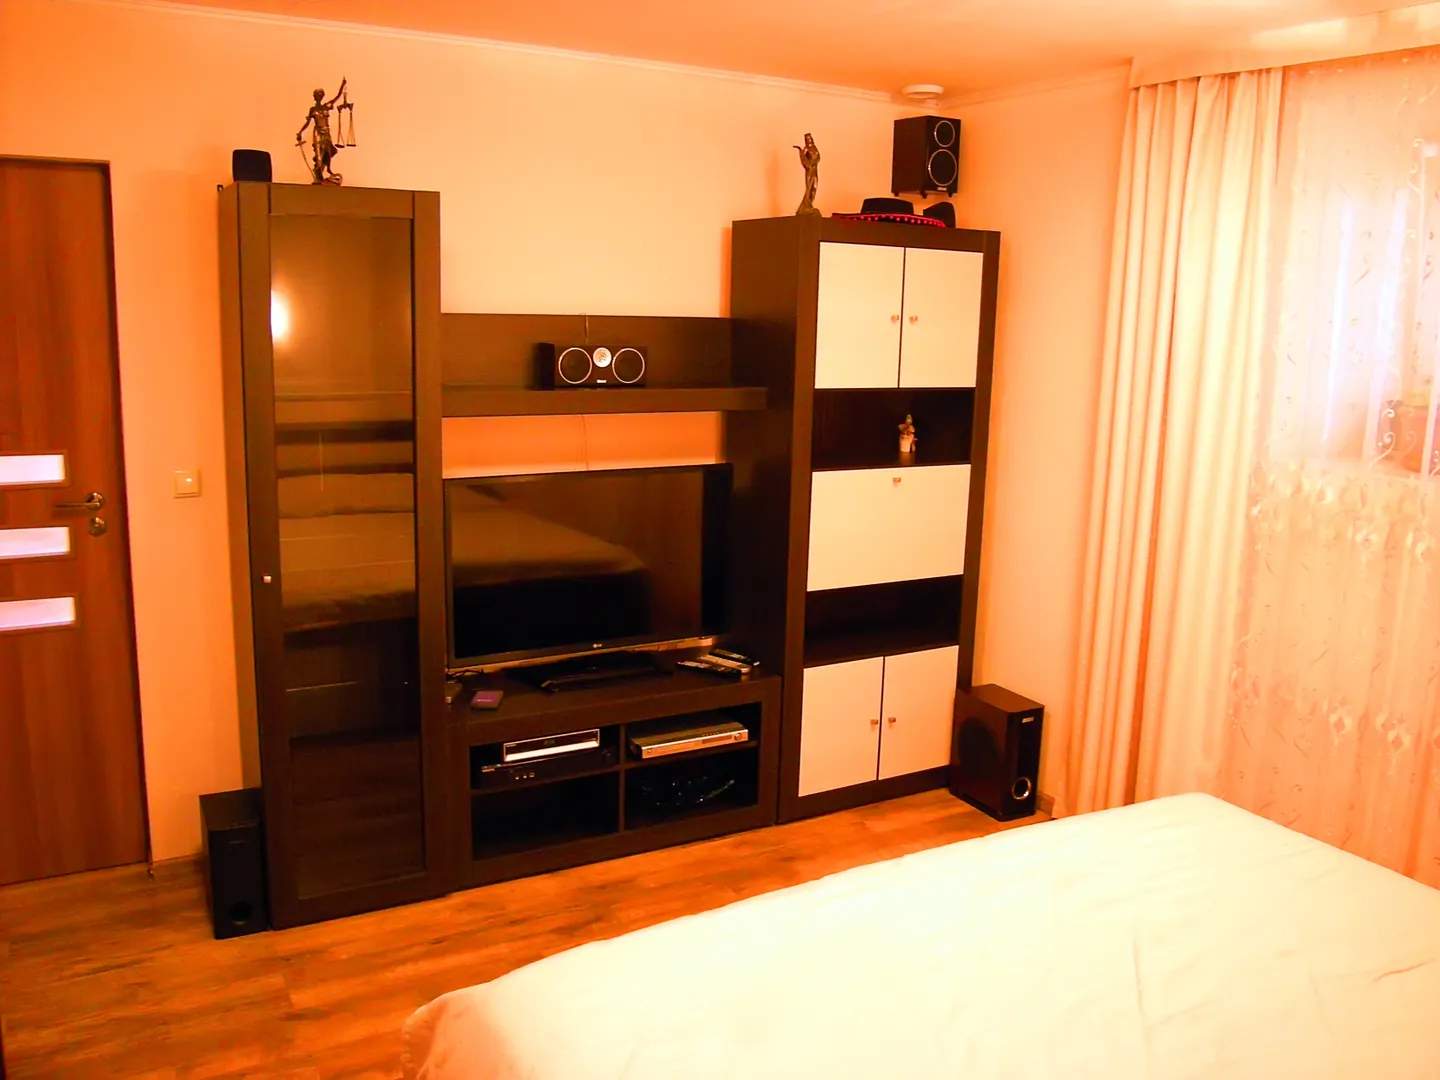 1-я отдельная (большая спальня) с большим телевизором LCD 45